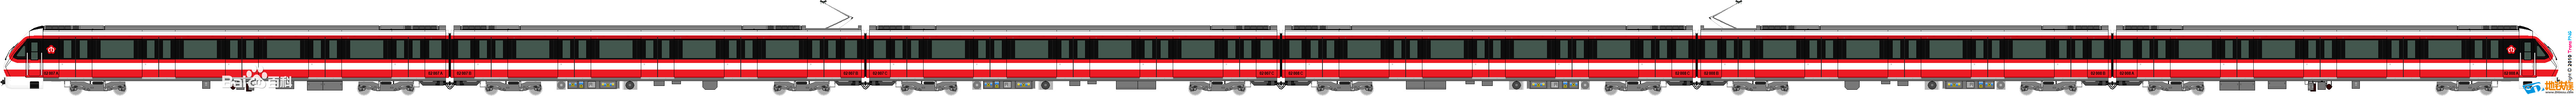 南京捷運二號線列車側面繪圖版